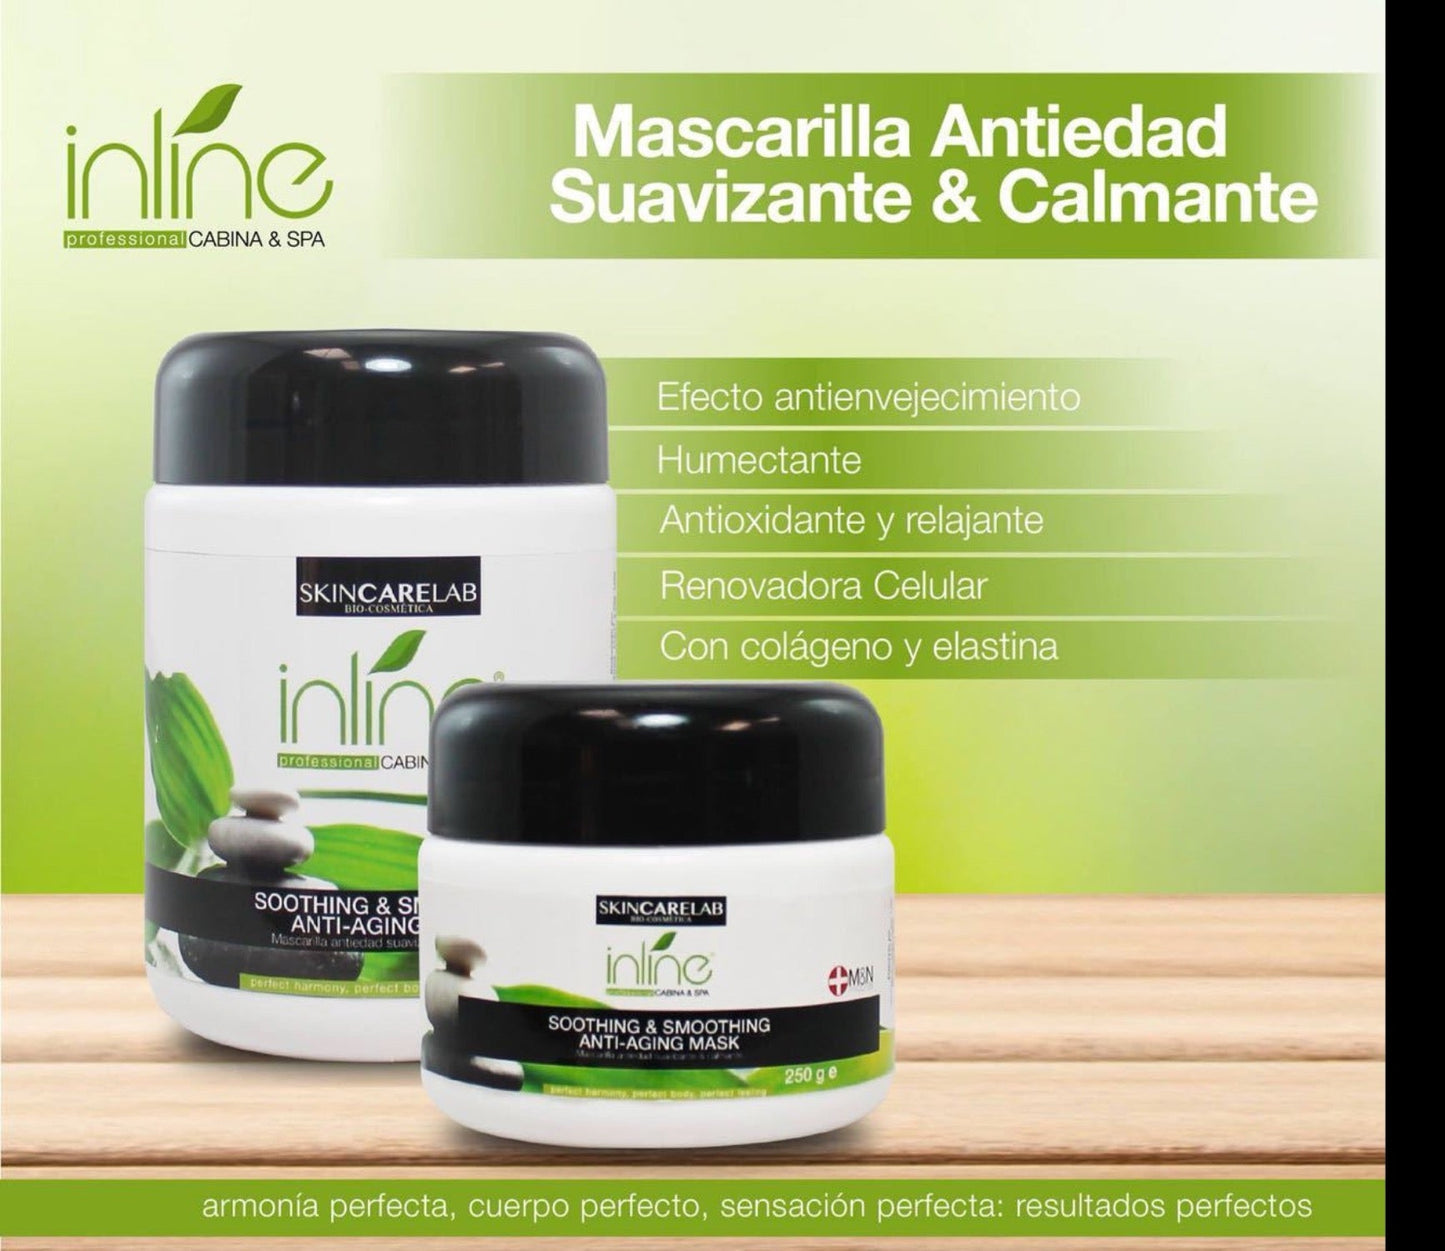 Mascarilla antiedad suavizante & calmante Inline® de acción suavizante, hidratante, humectante y sensación de bienestar.